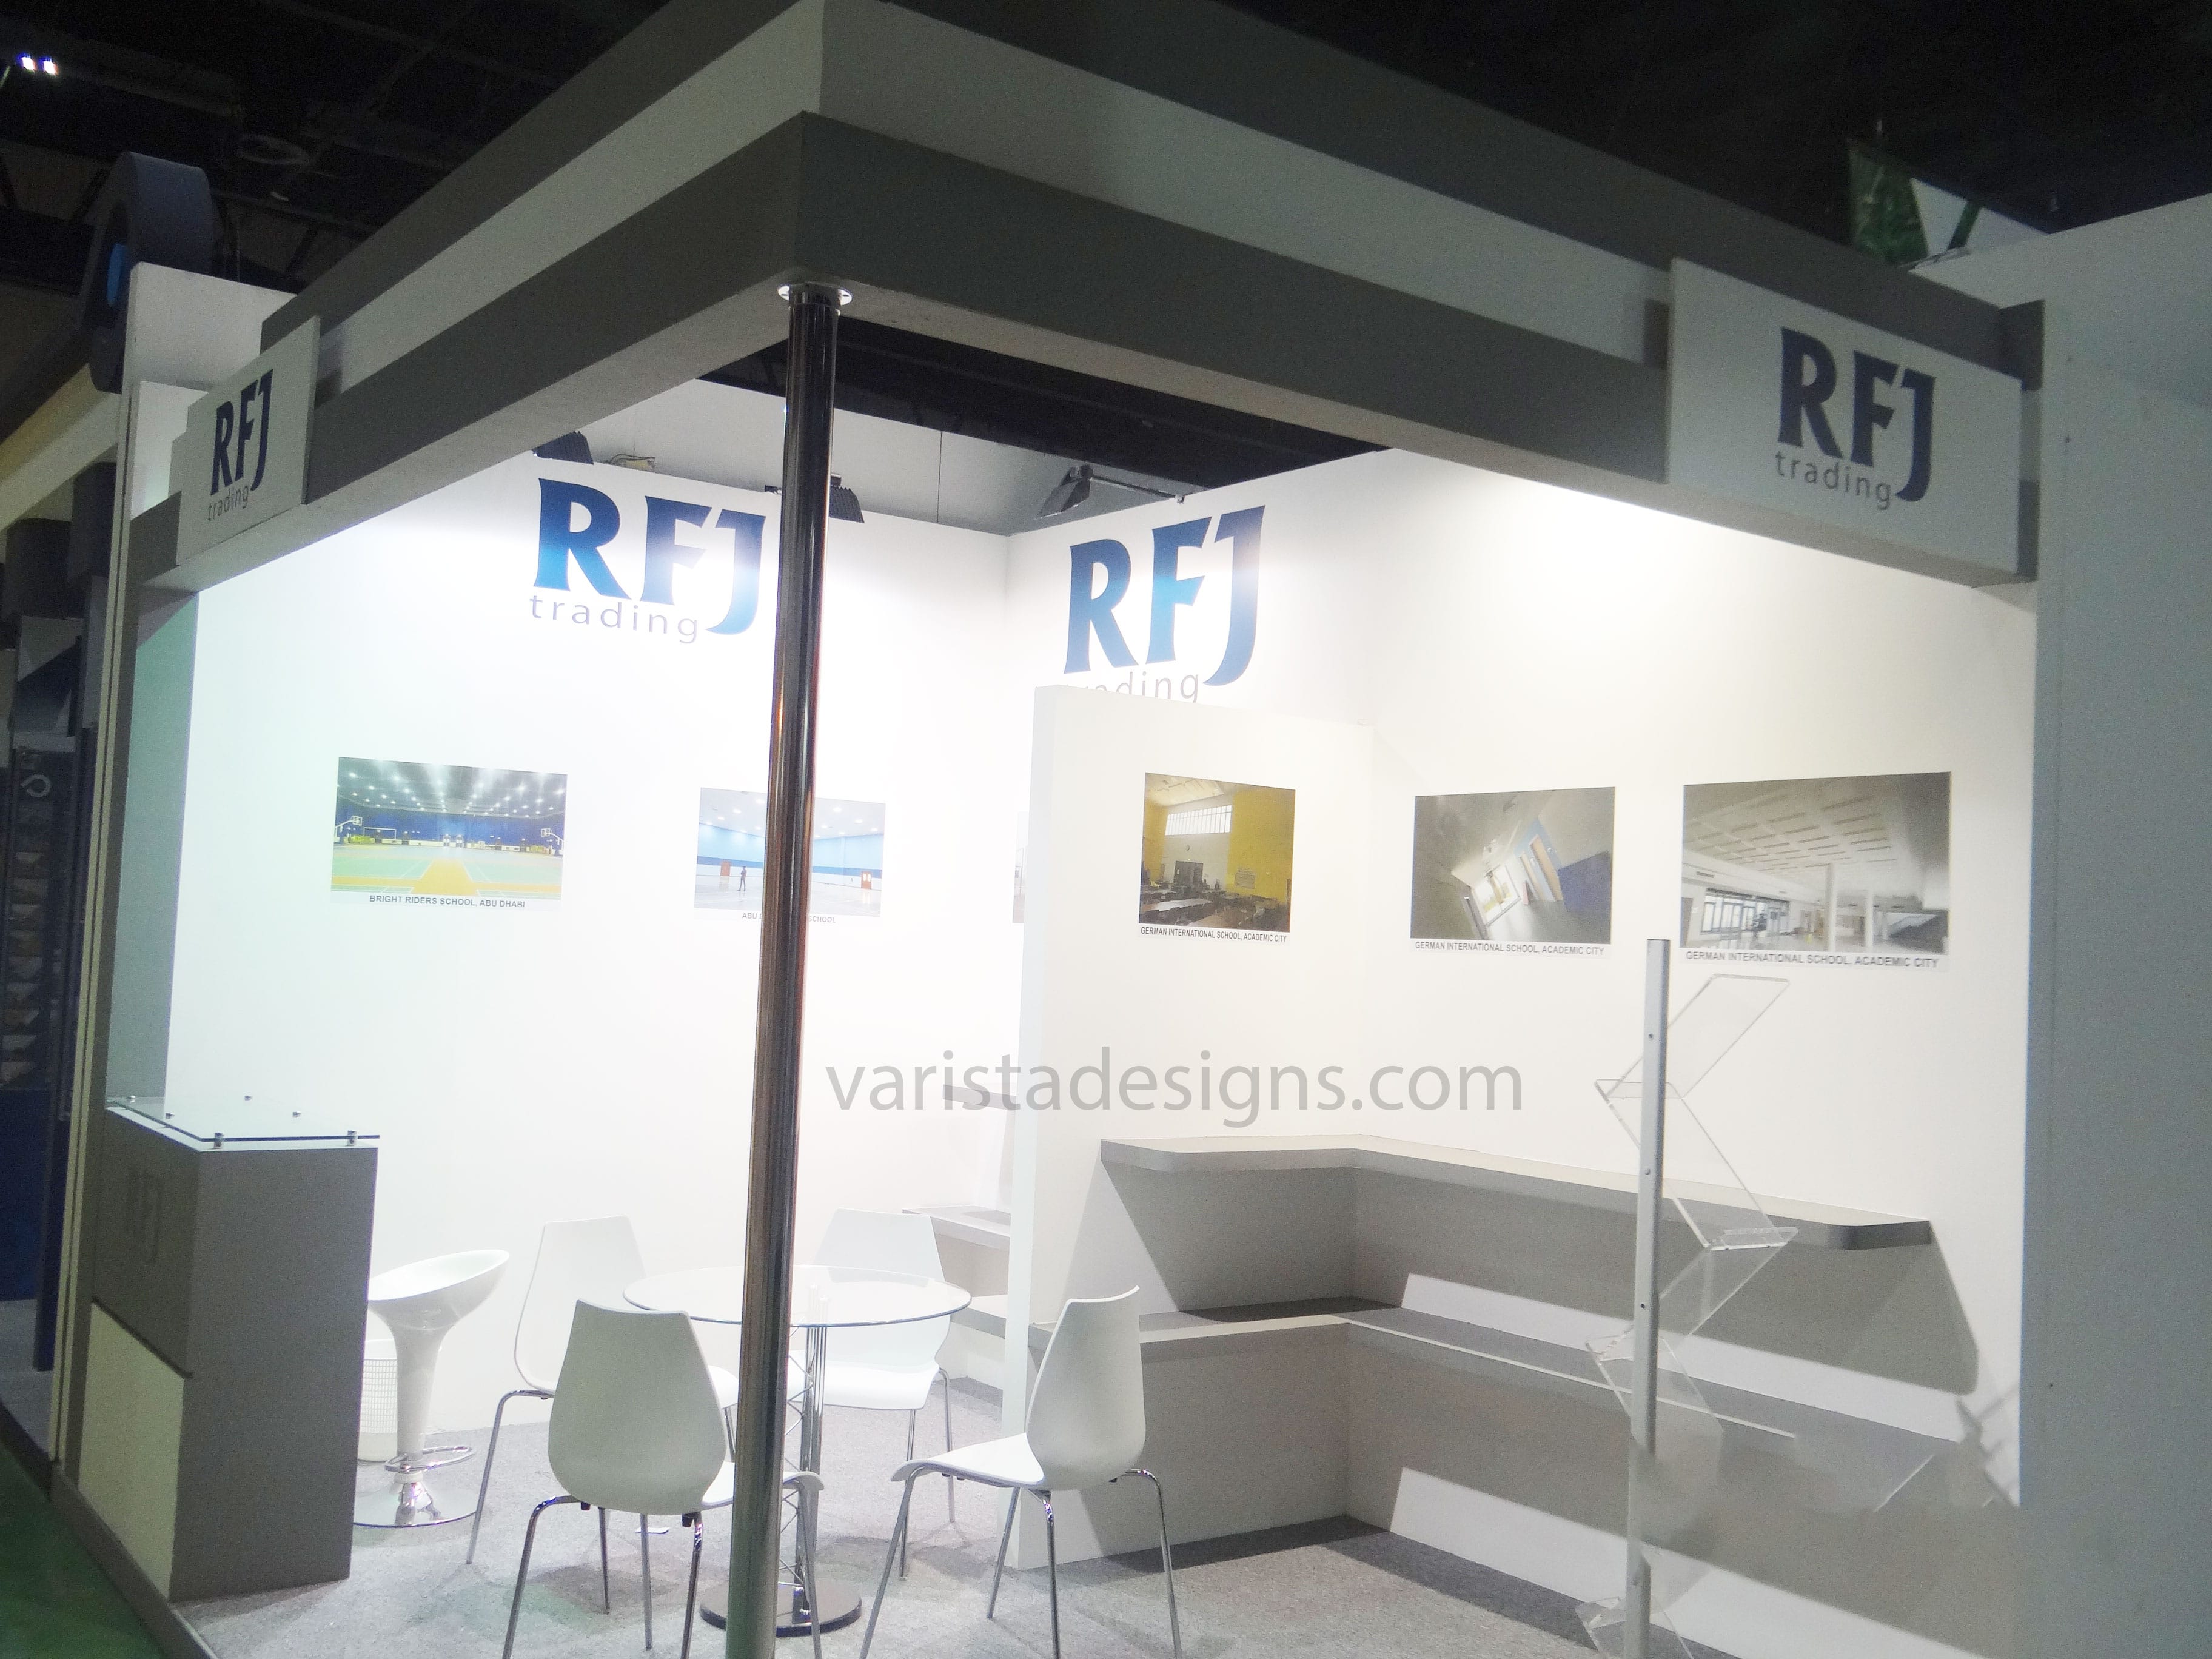 varistadesigns RFJ trading Exhibition Stand